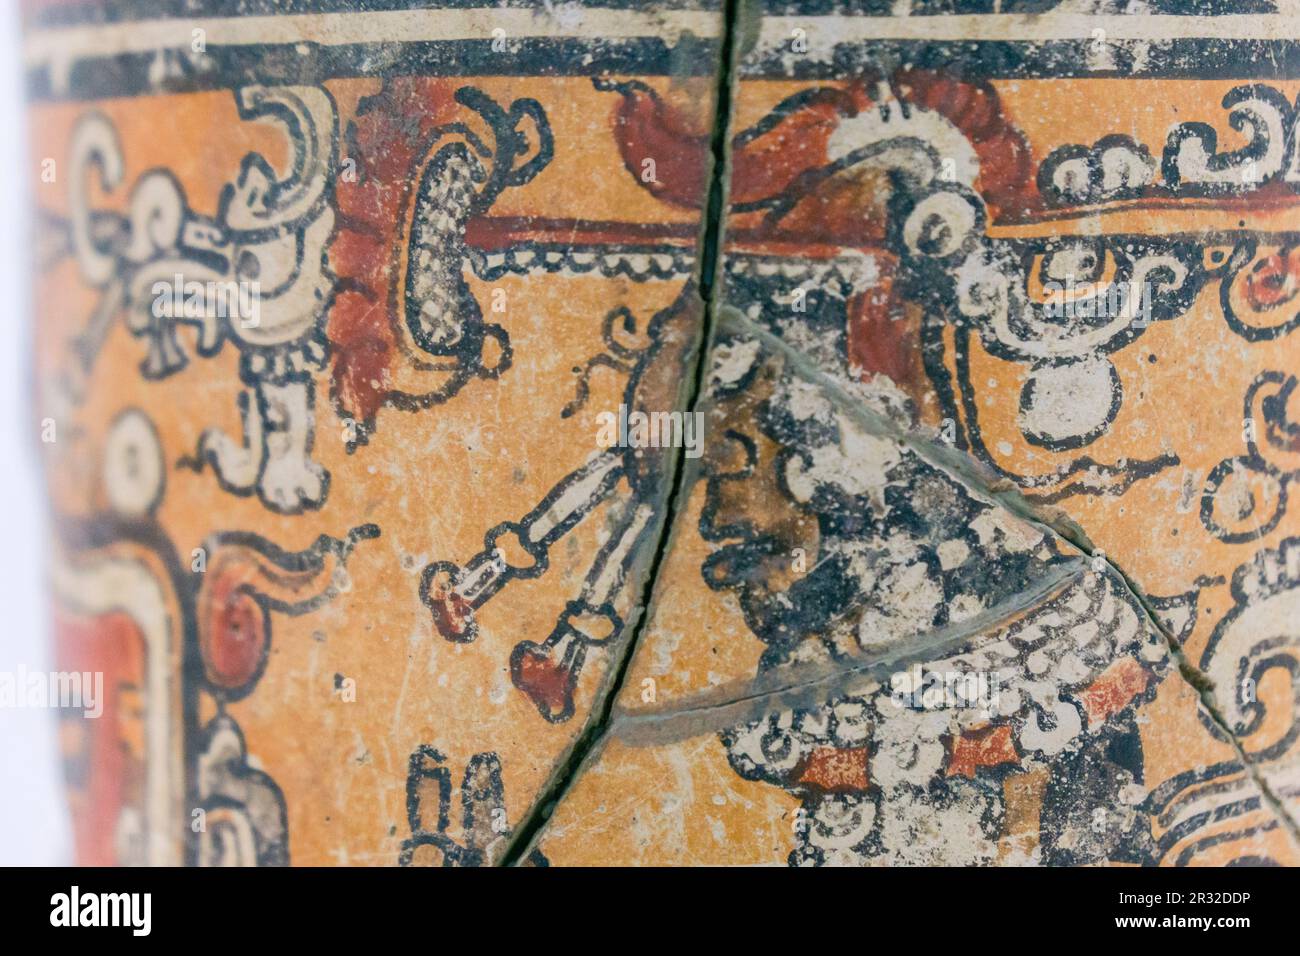 gobernante con piel de jaguar sentado en una canoa y tocado con una serpiente bicefala, vaso polícromo, clásico tardio, Santa María Nebaj,museo de antropologia Maya, departamento de El Quiché, Guatemala, Central America. Stock Photo